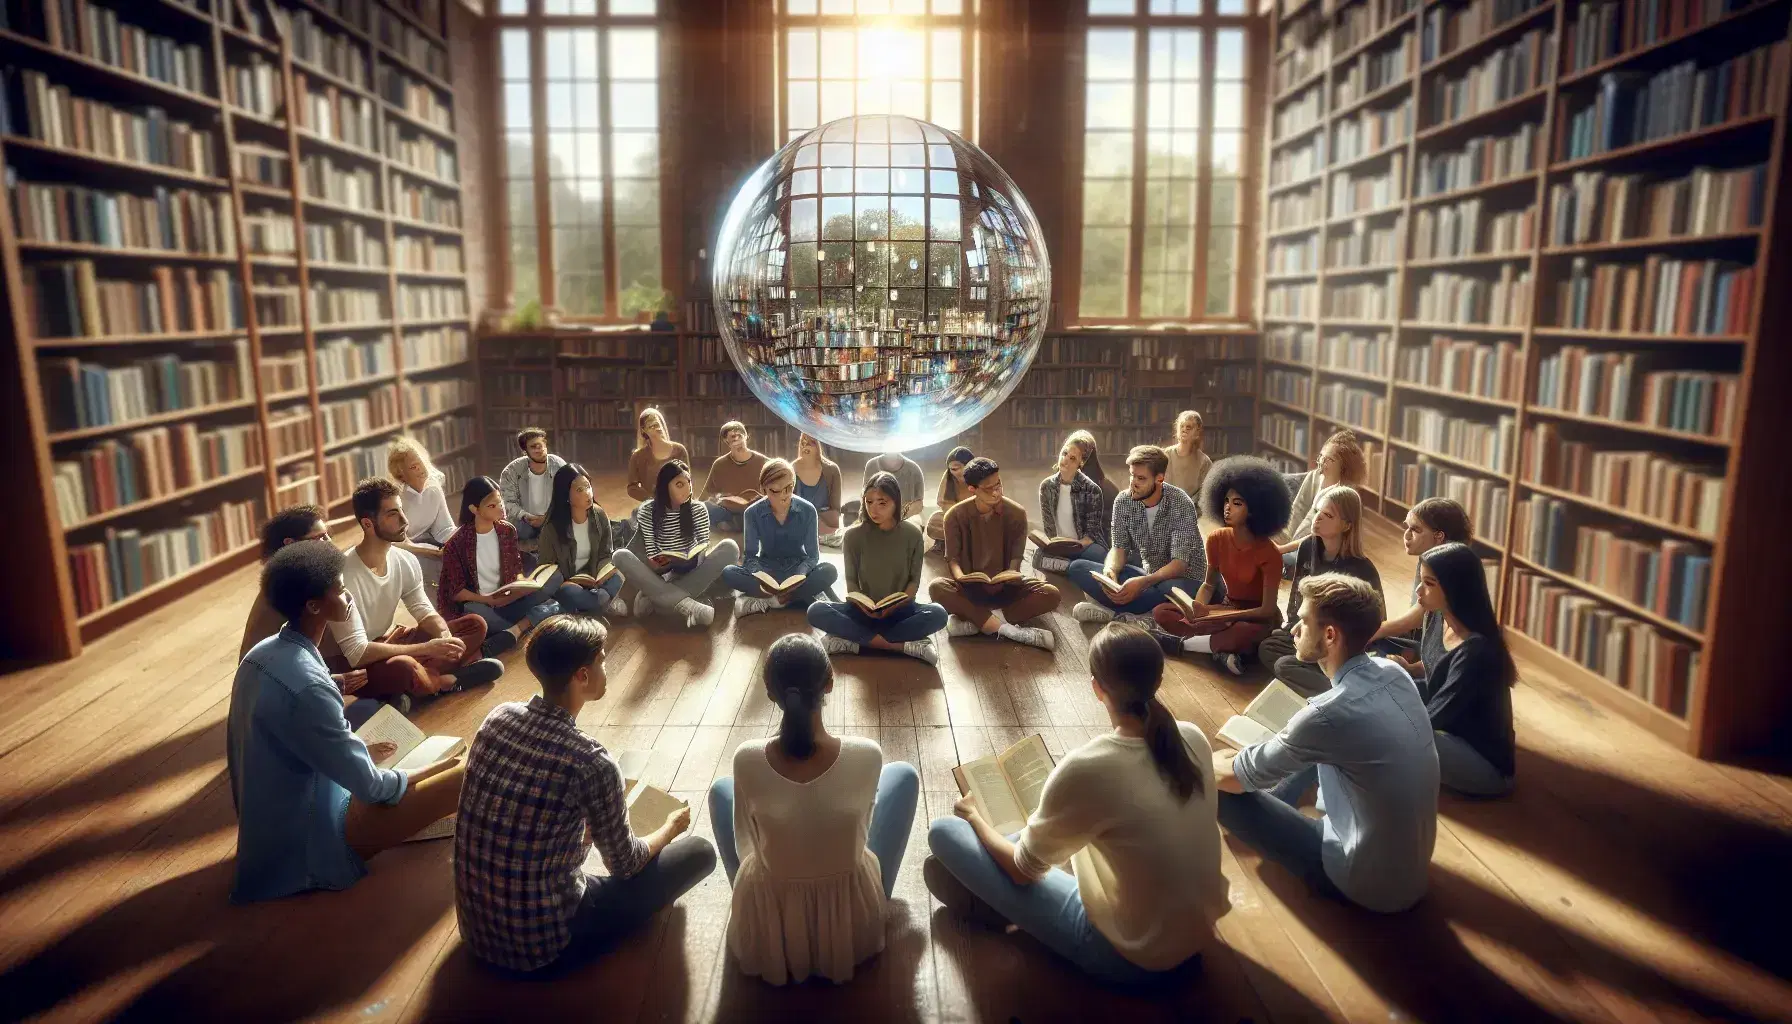 Grupo diverso de estudiantes sentados en círculo en una biblioteca, enfocados en una esfera de vidrio que refleja la luz, rodeados de estantes con libros y luz natural.